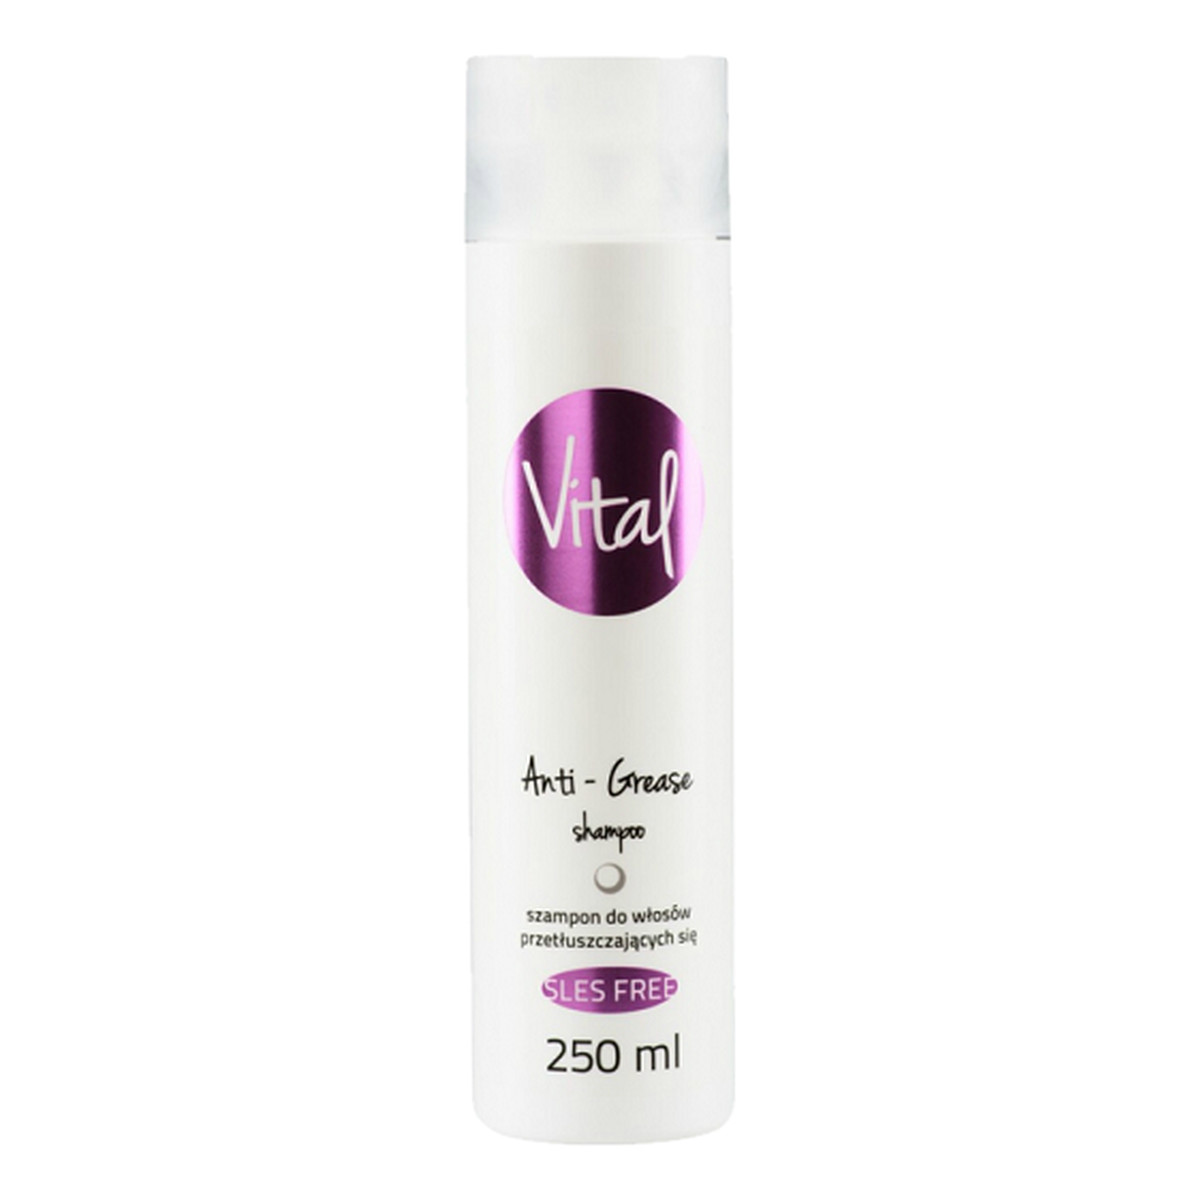 Stapiz Vital Anti-Grease Shampoo Szampon do włosów przetłuszczających się 250ml